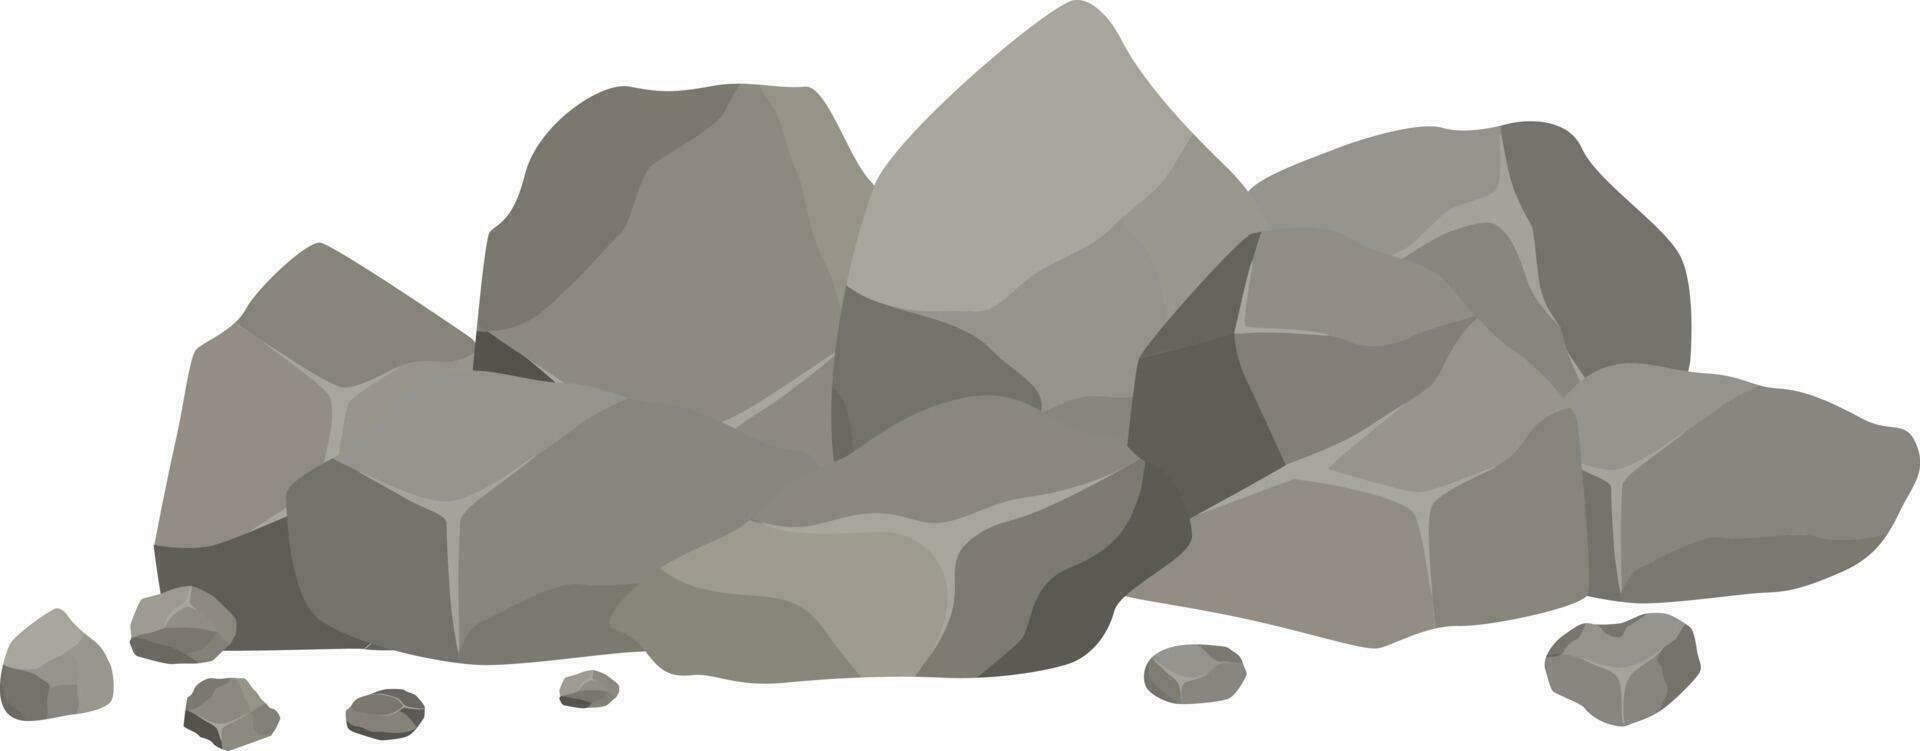 en lugg av grå granit stenar av olika former. vektor